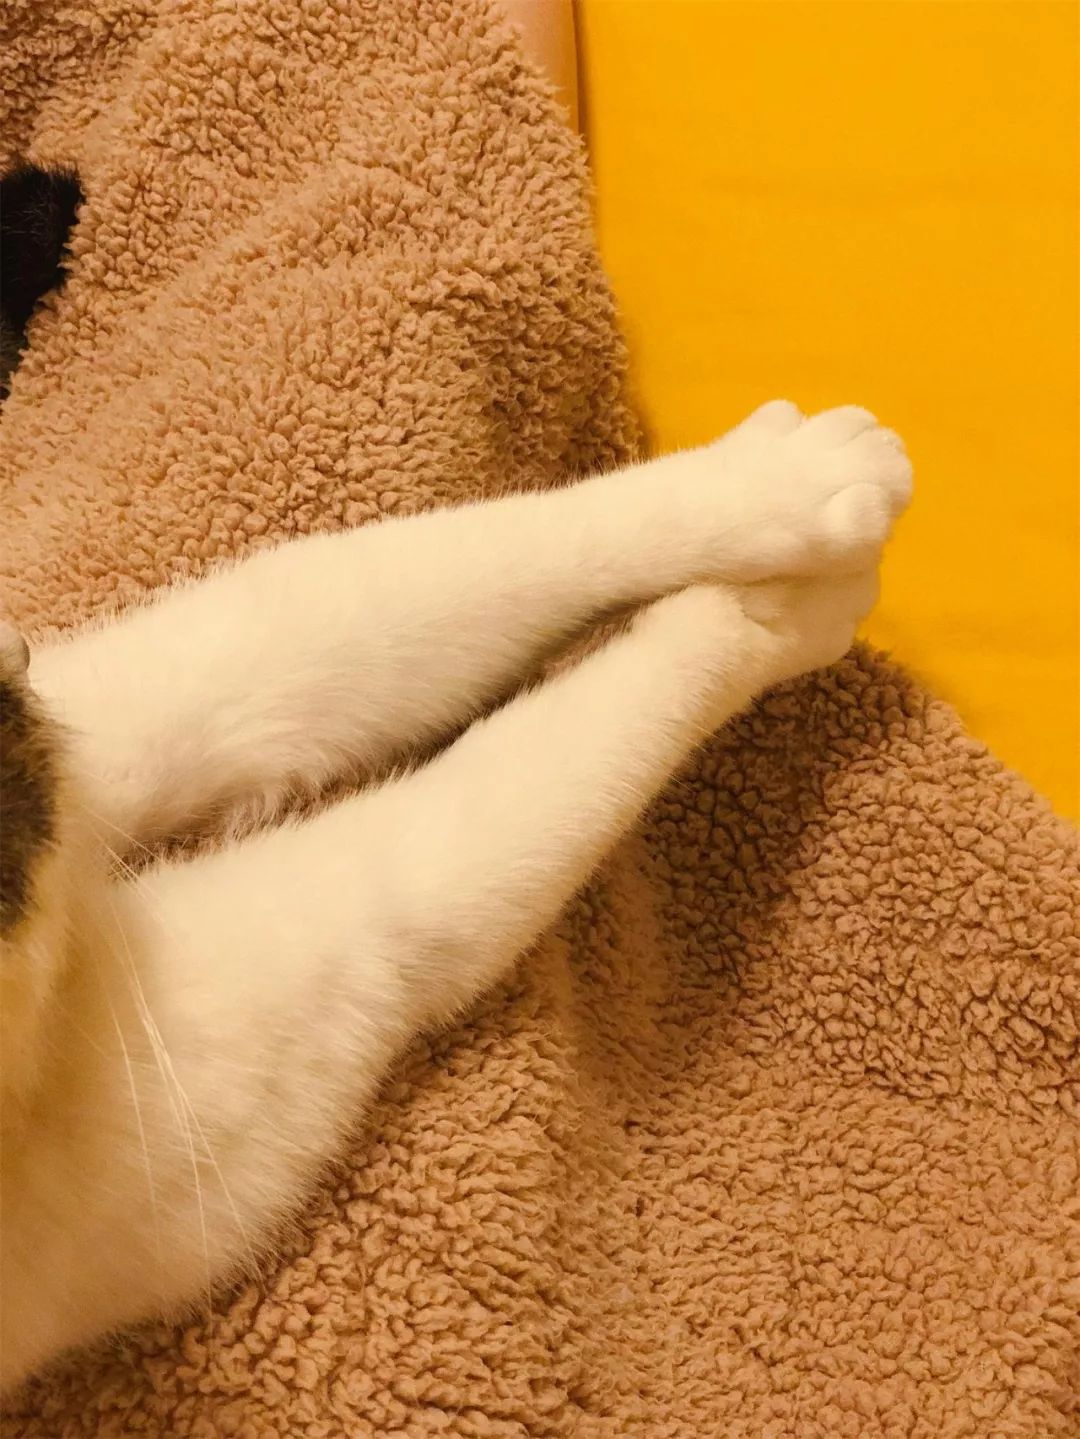 猫咪伸腿表情包图片